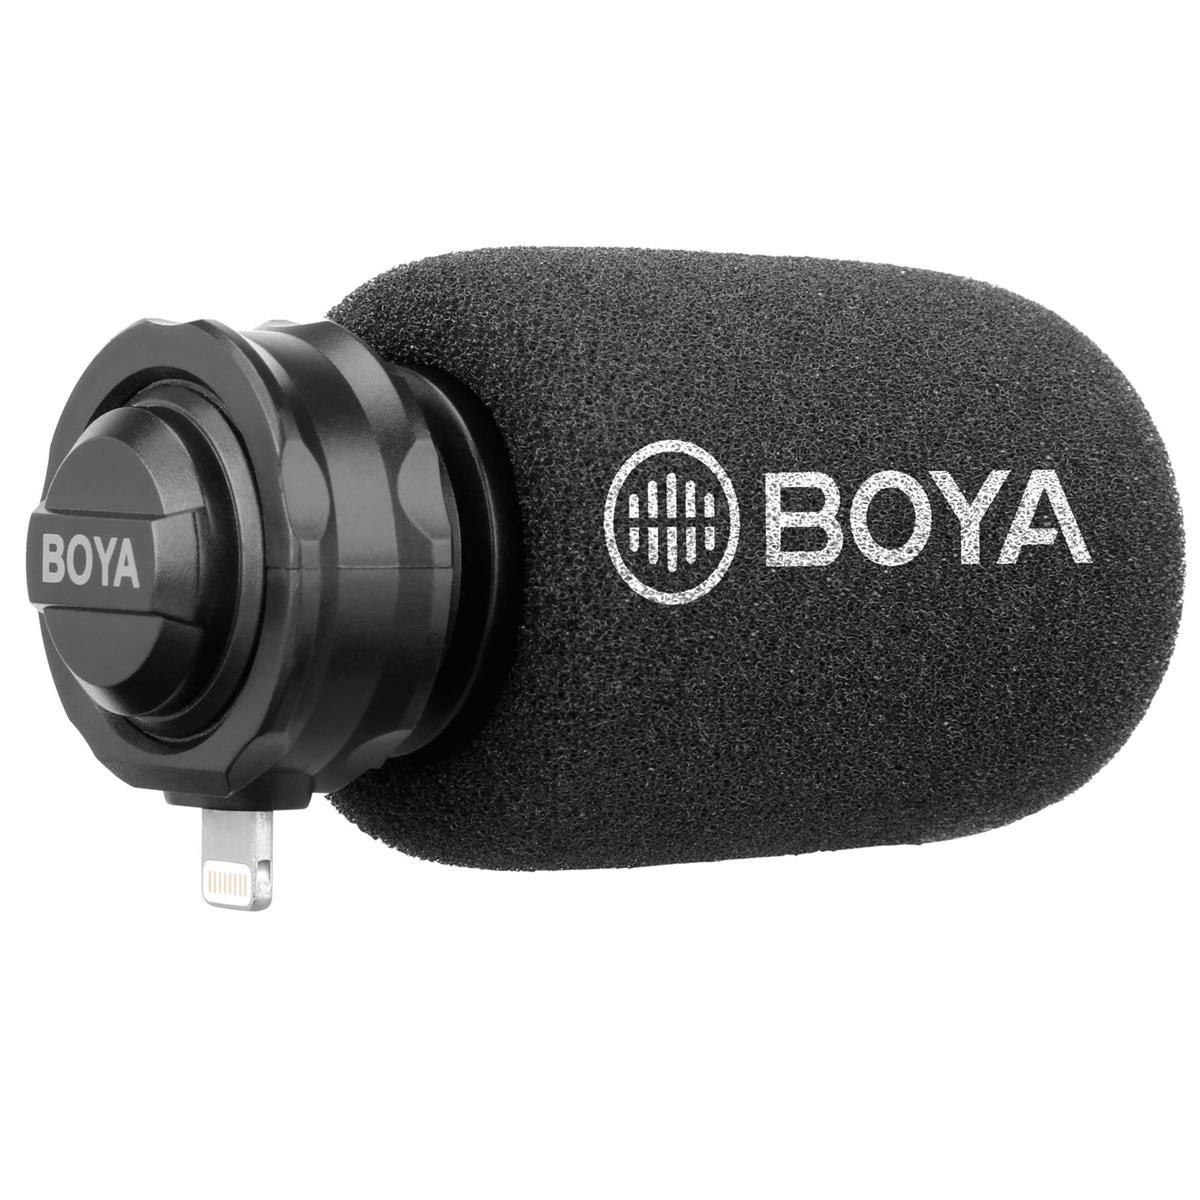 Cardioid Digital Stereo X/Y Condenser Microphone - BOYA BY-DM200